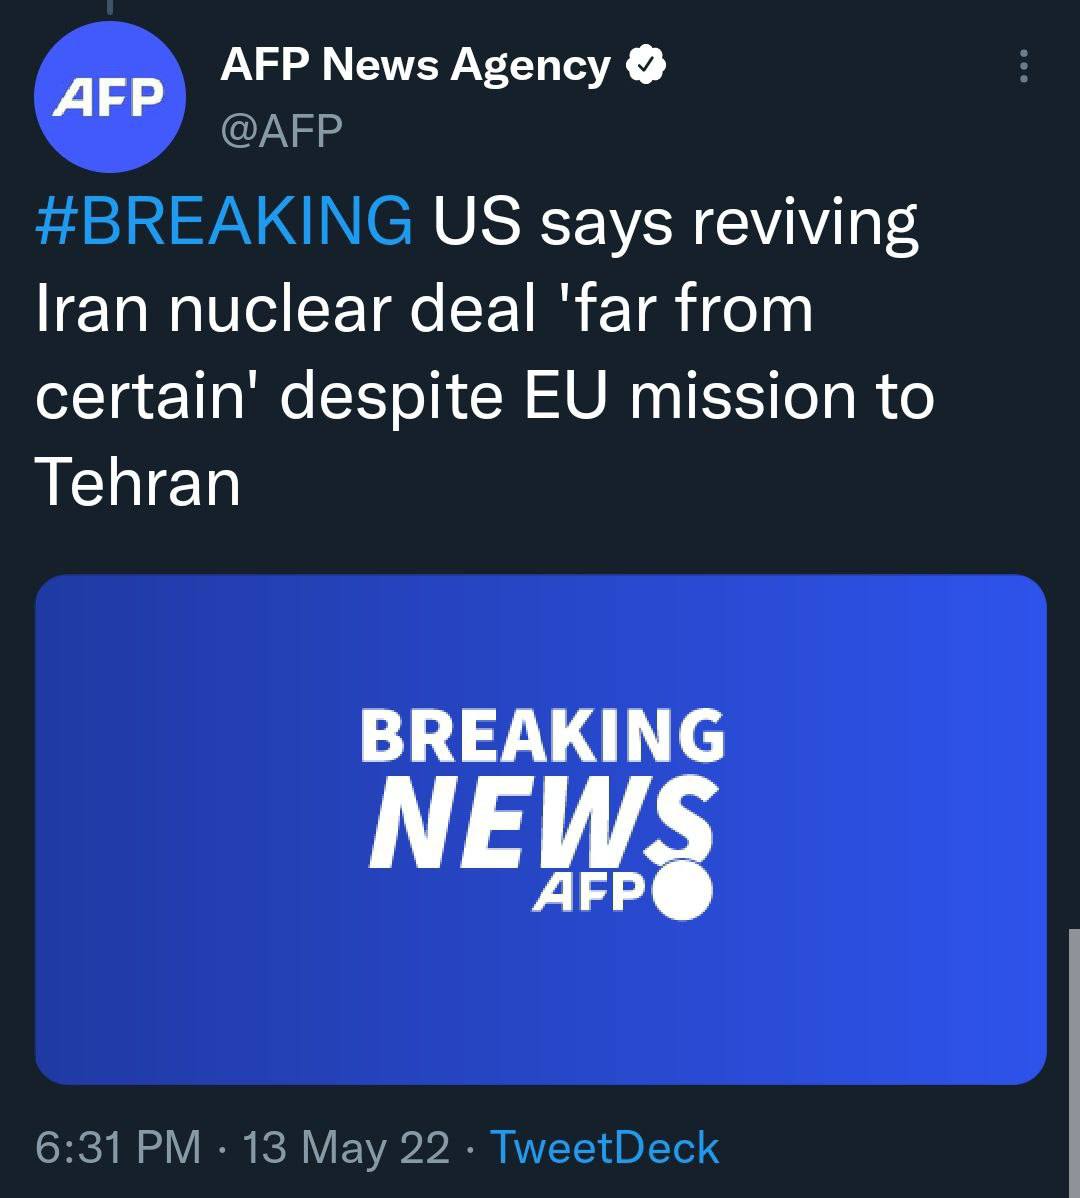 خبرگزاری فرانسه:آمریکا می‌گوید احیای توافق هسته ایران، علی‌رغم سفر نماینده اتحادیه اروپا به تهران، با قطعی شدن فاصله بسیاری دارد.